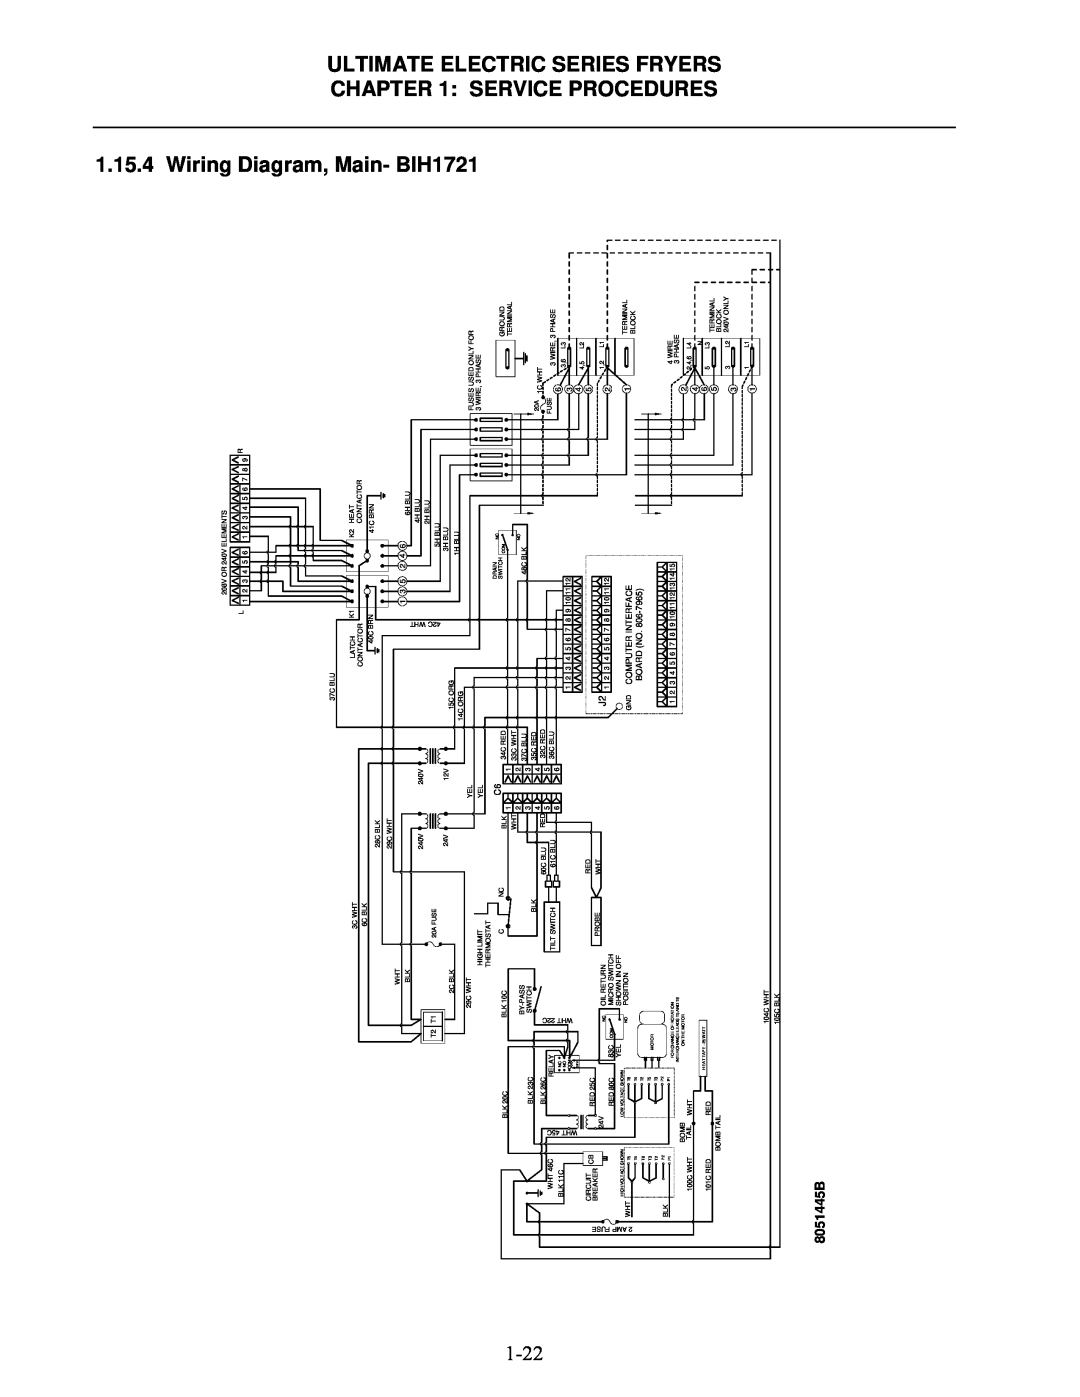 Frymaster Ultimate Electric Series manual Wiring Diagram, Main- BIH1721, 8051445B 